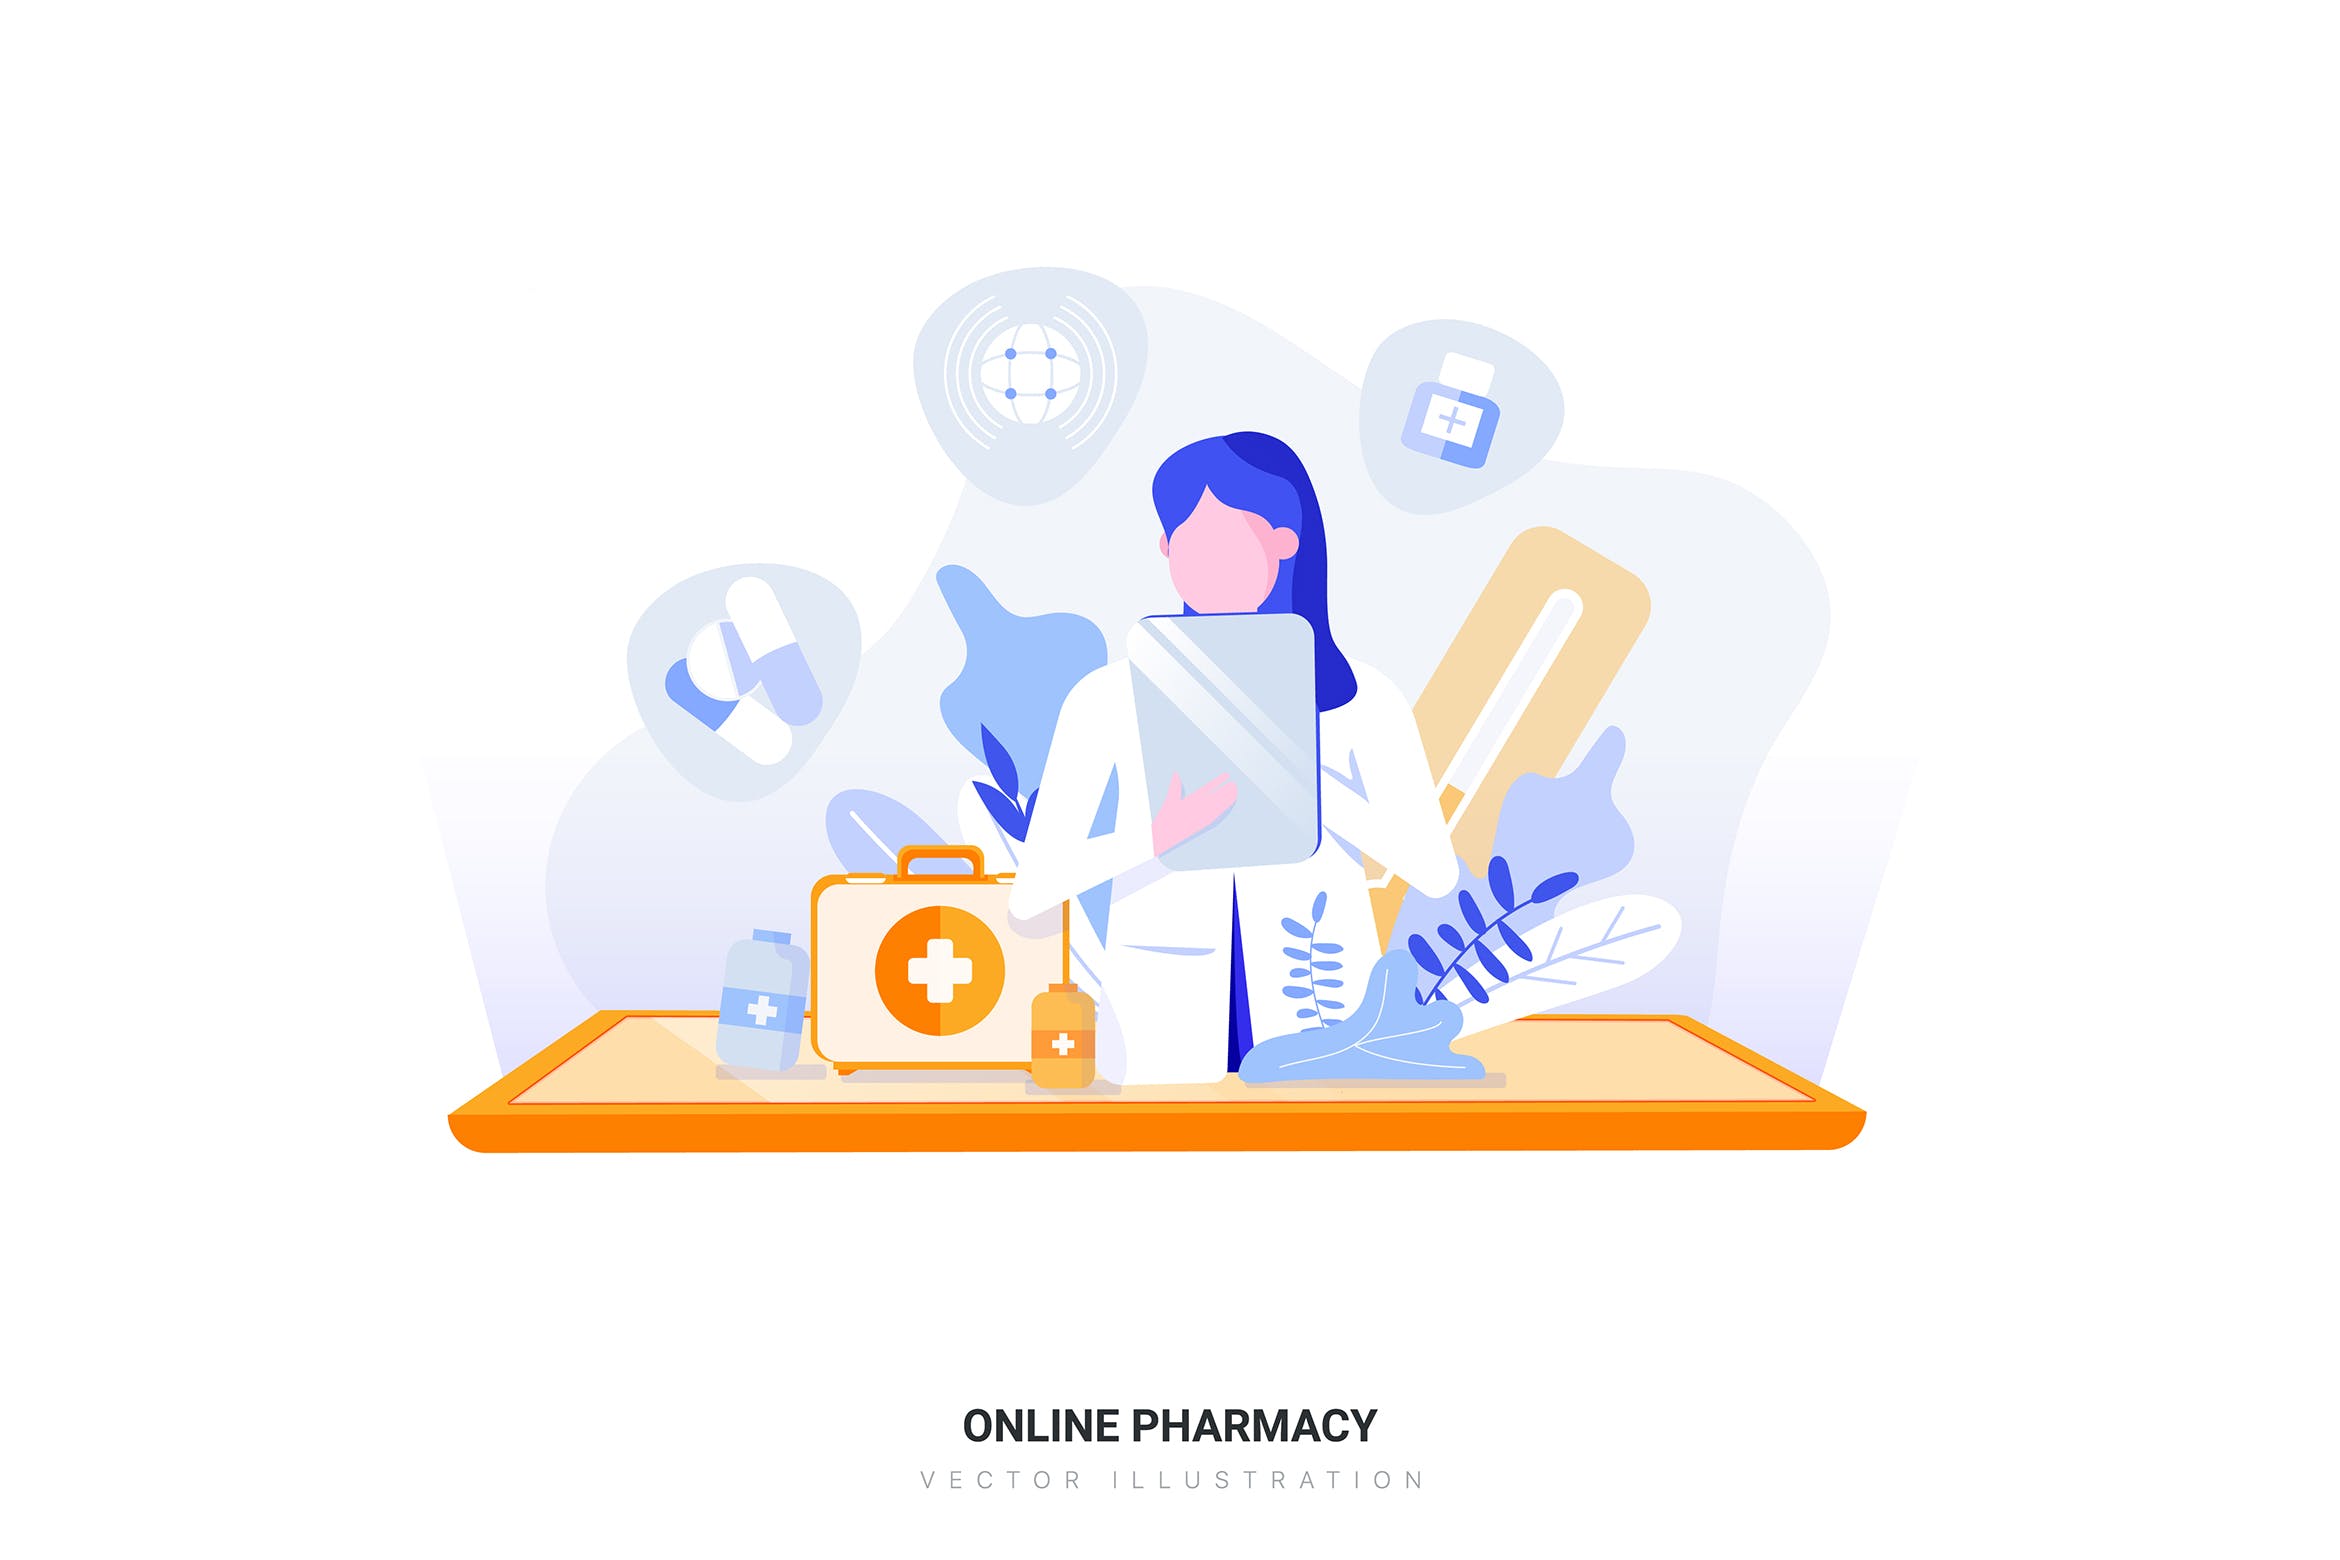 在线药房矢量概念插画素材 Online Pharmacy Vector Illustration插图